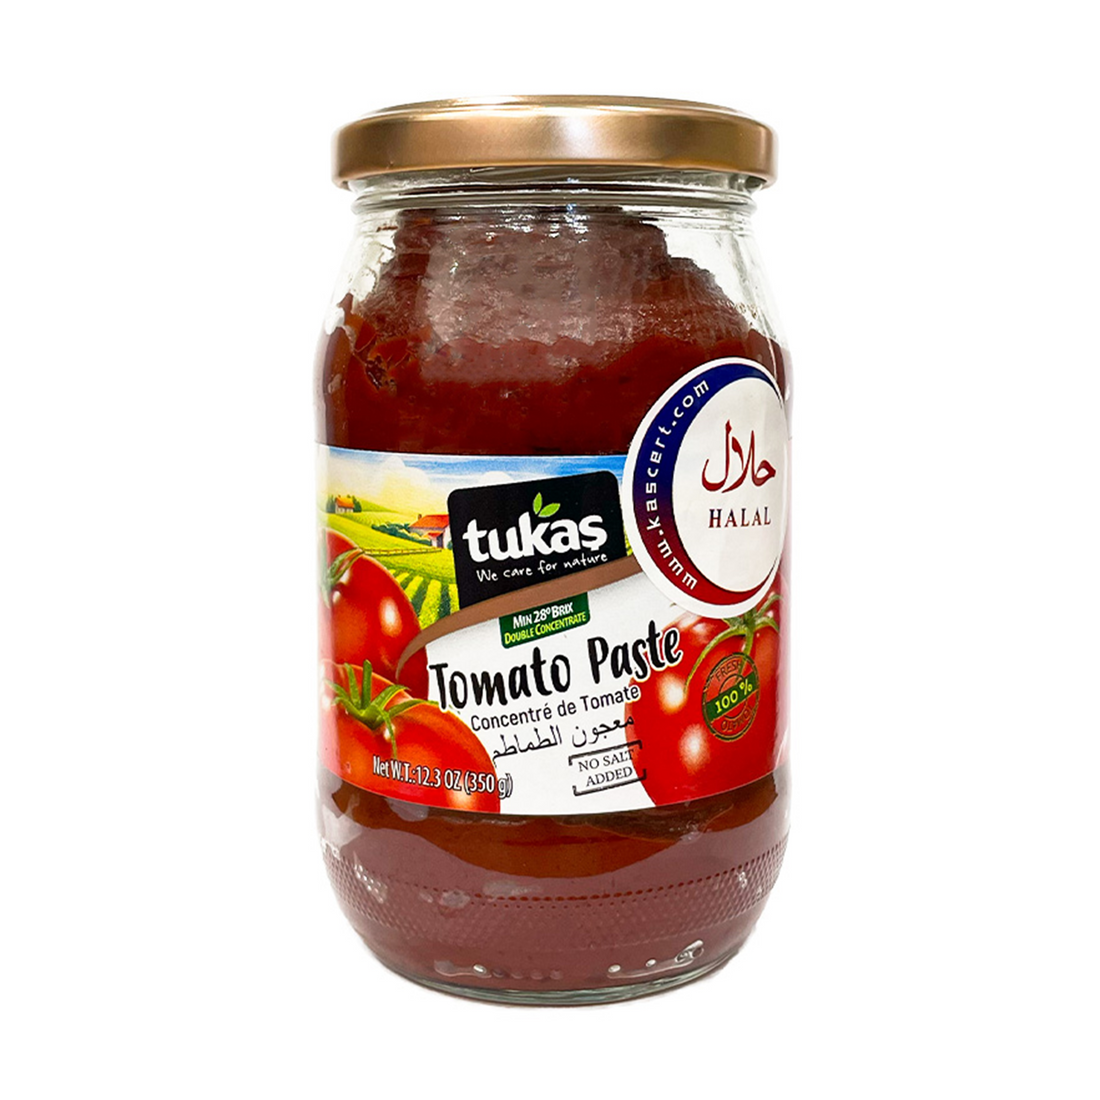 Tukas Tomato Paste Jar 350g Made in Turkey | Tukas Domates Salcasi | Tomato Paste